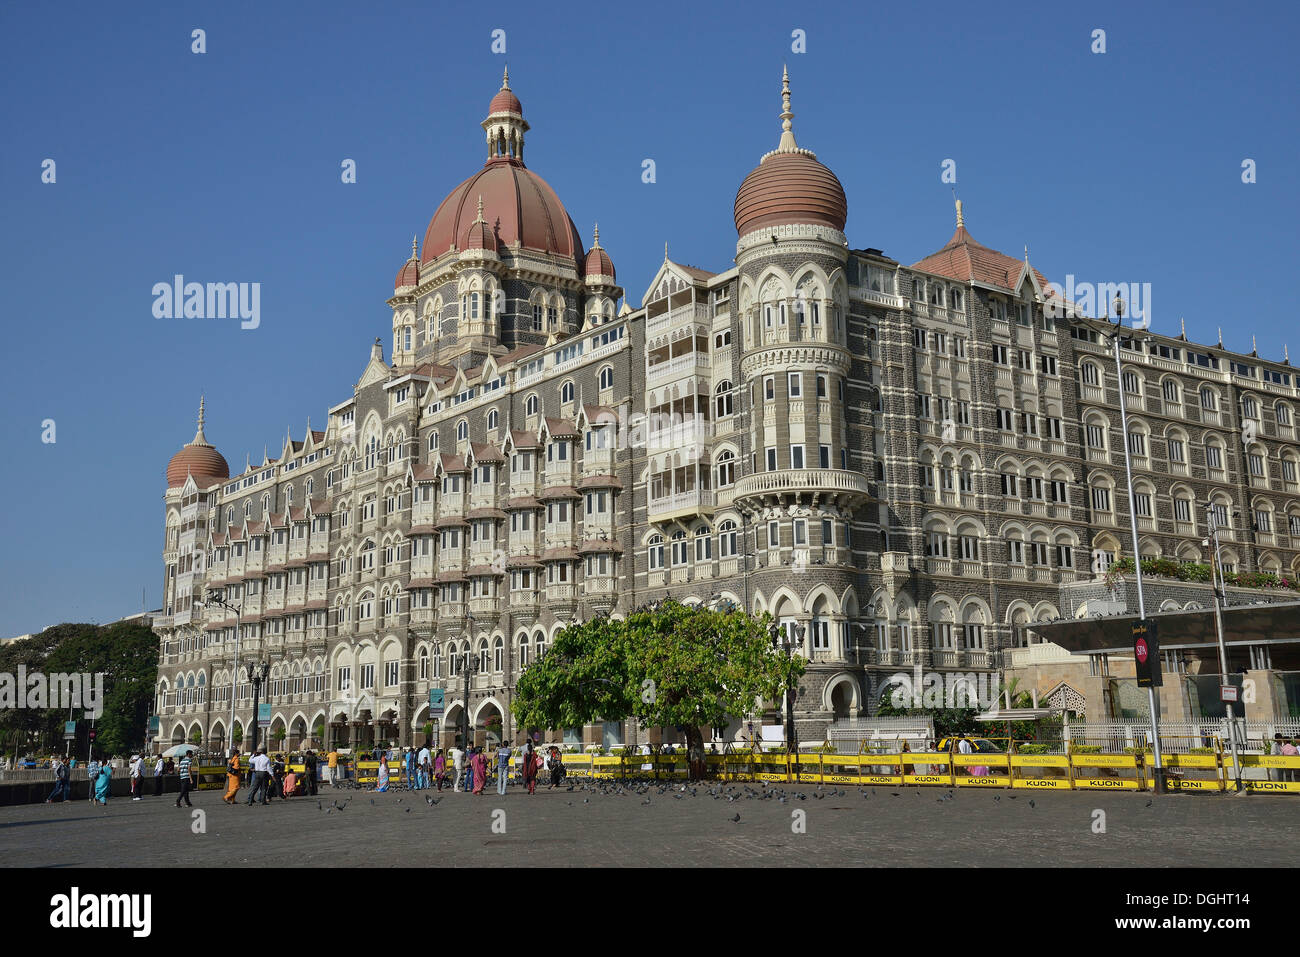 Taj Mahal Hotel, heavily damaged in a terrorist attack in November 2008, reopened in 2010, Mumbai, Maharashtra, India Stock Photo